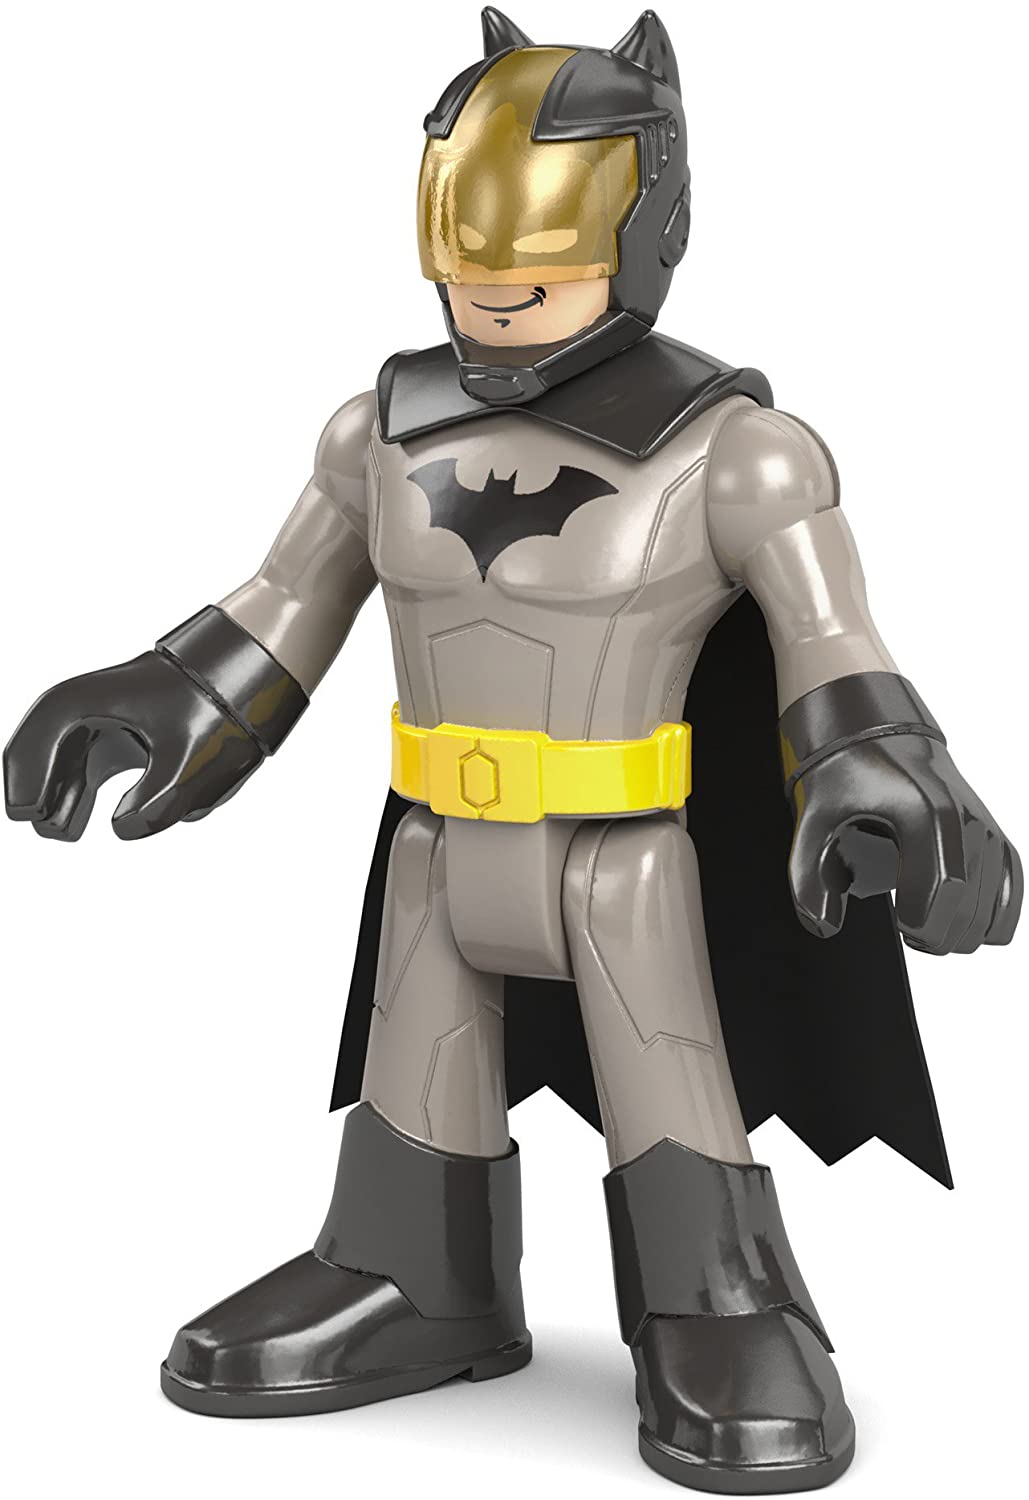 Fisher-Price Imaginext DC Super Friends, Battle Armor Batman